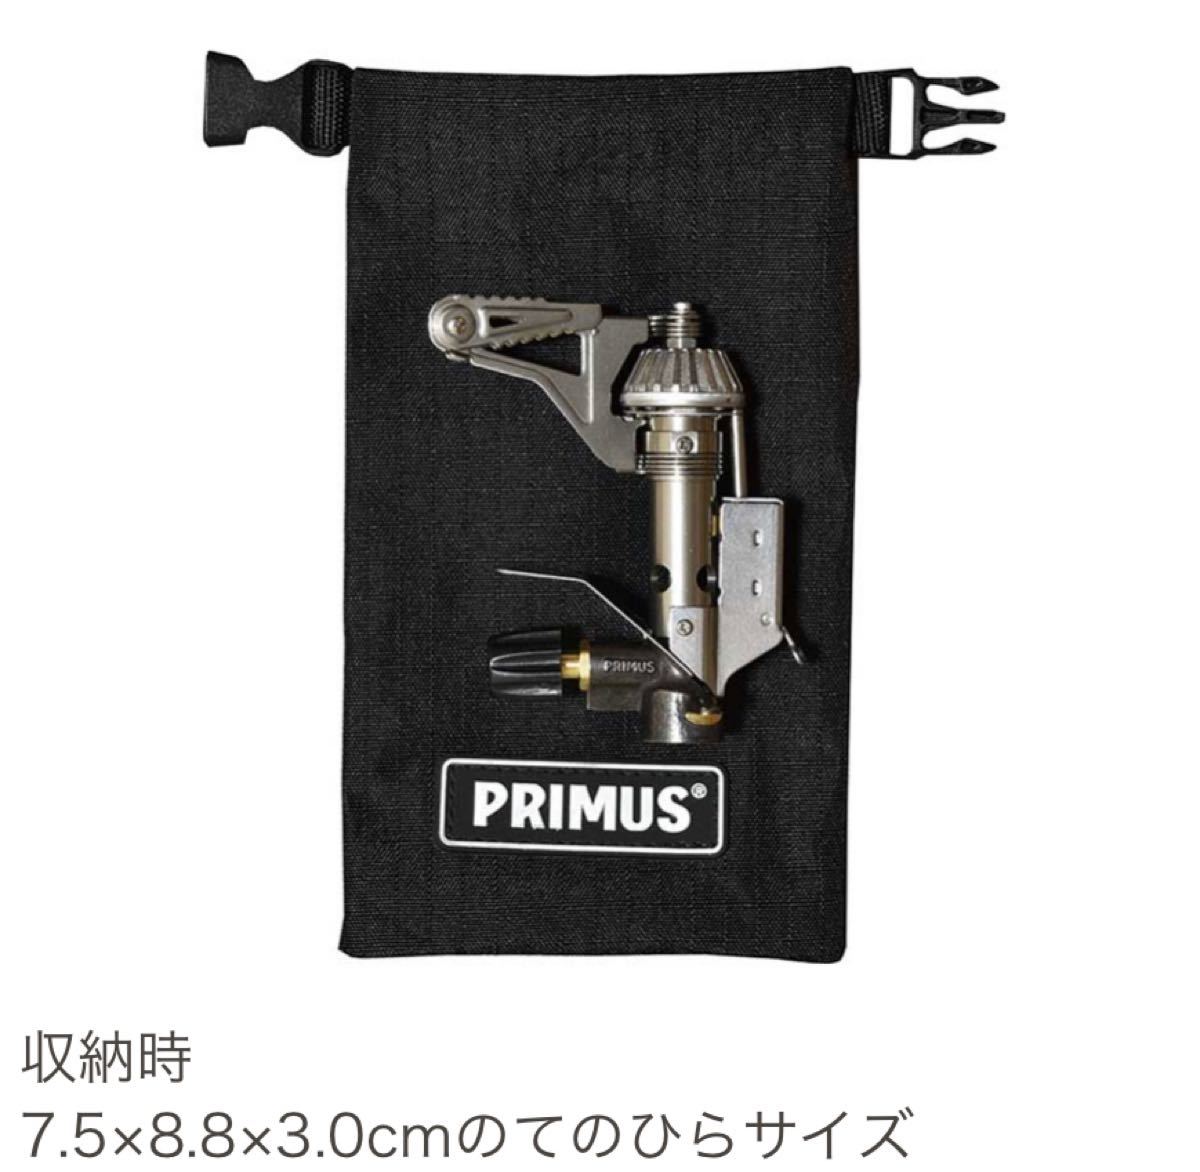 【新品未開封】プリムス 153 ウルトラバーナー P153 PRIMUS Iwatani シングルバーナー